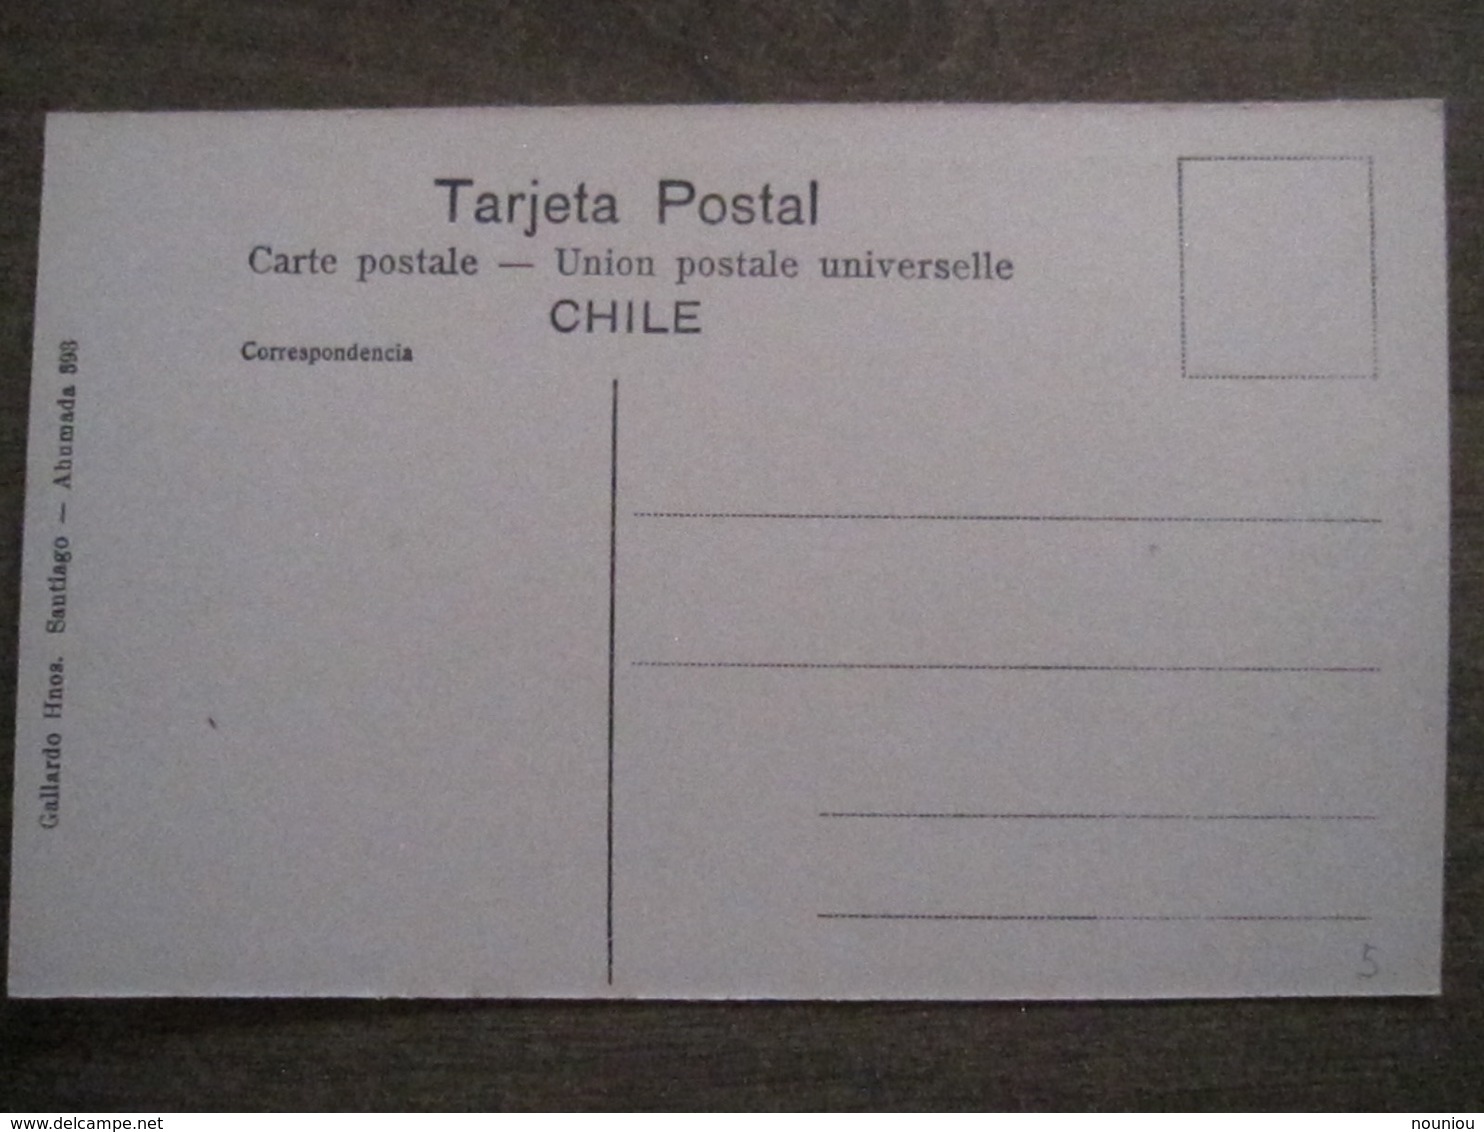 Tarjeta Postal - Chile Chili - Santiago - Parque Cousino El Cerrito - Hnos Ahumada 393 No. 102 - Foto Leon - Chili